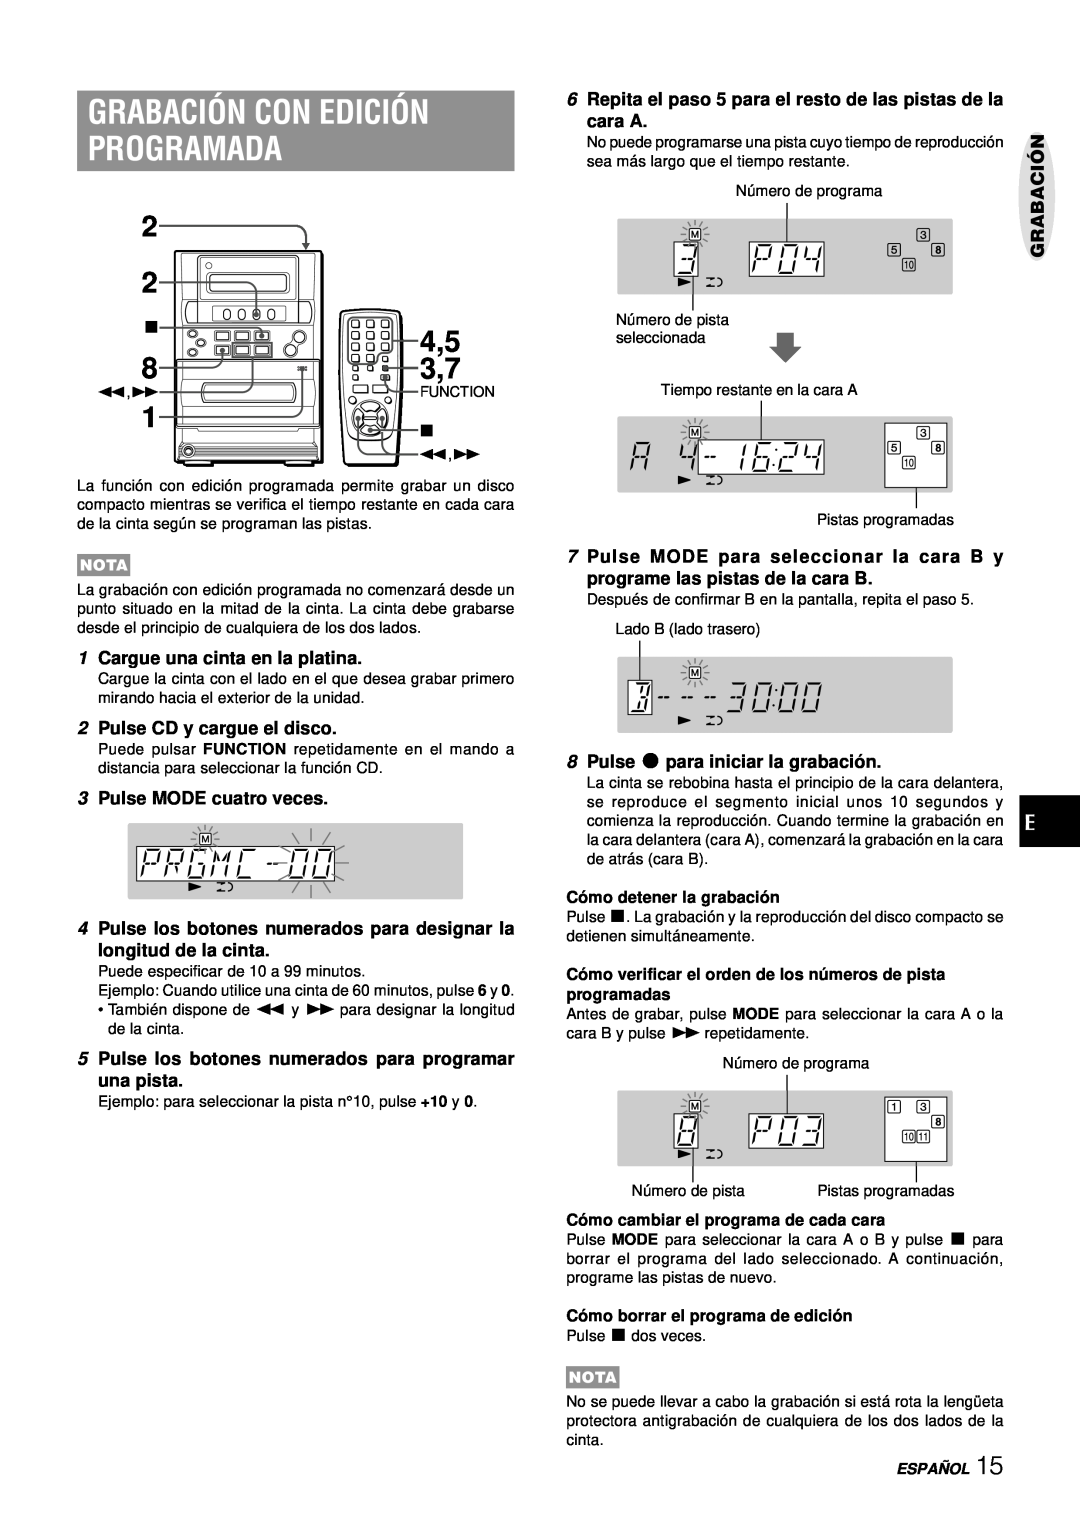 Aiwa LCX-357 manual Grabación Con Edición Programada, 3Pulse MODE cuatro veces, 5Pulse los botones numerados para programar 